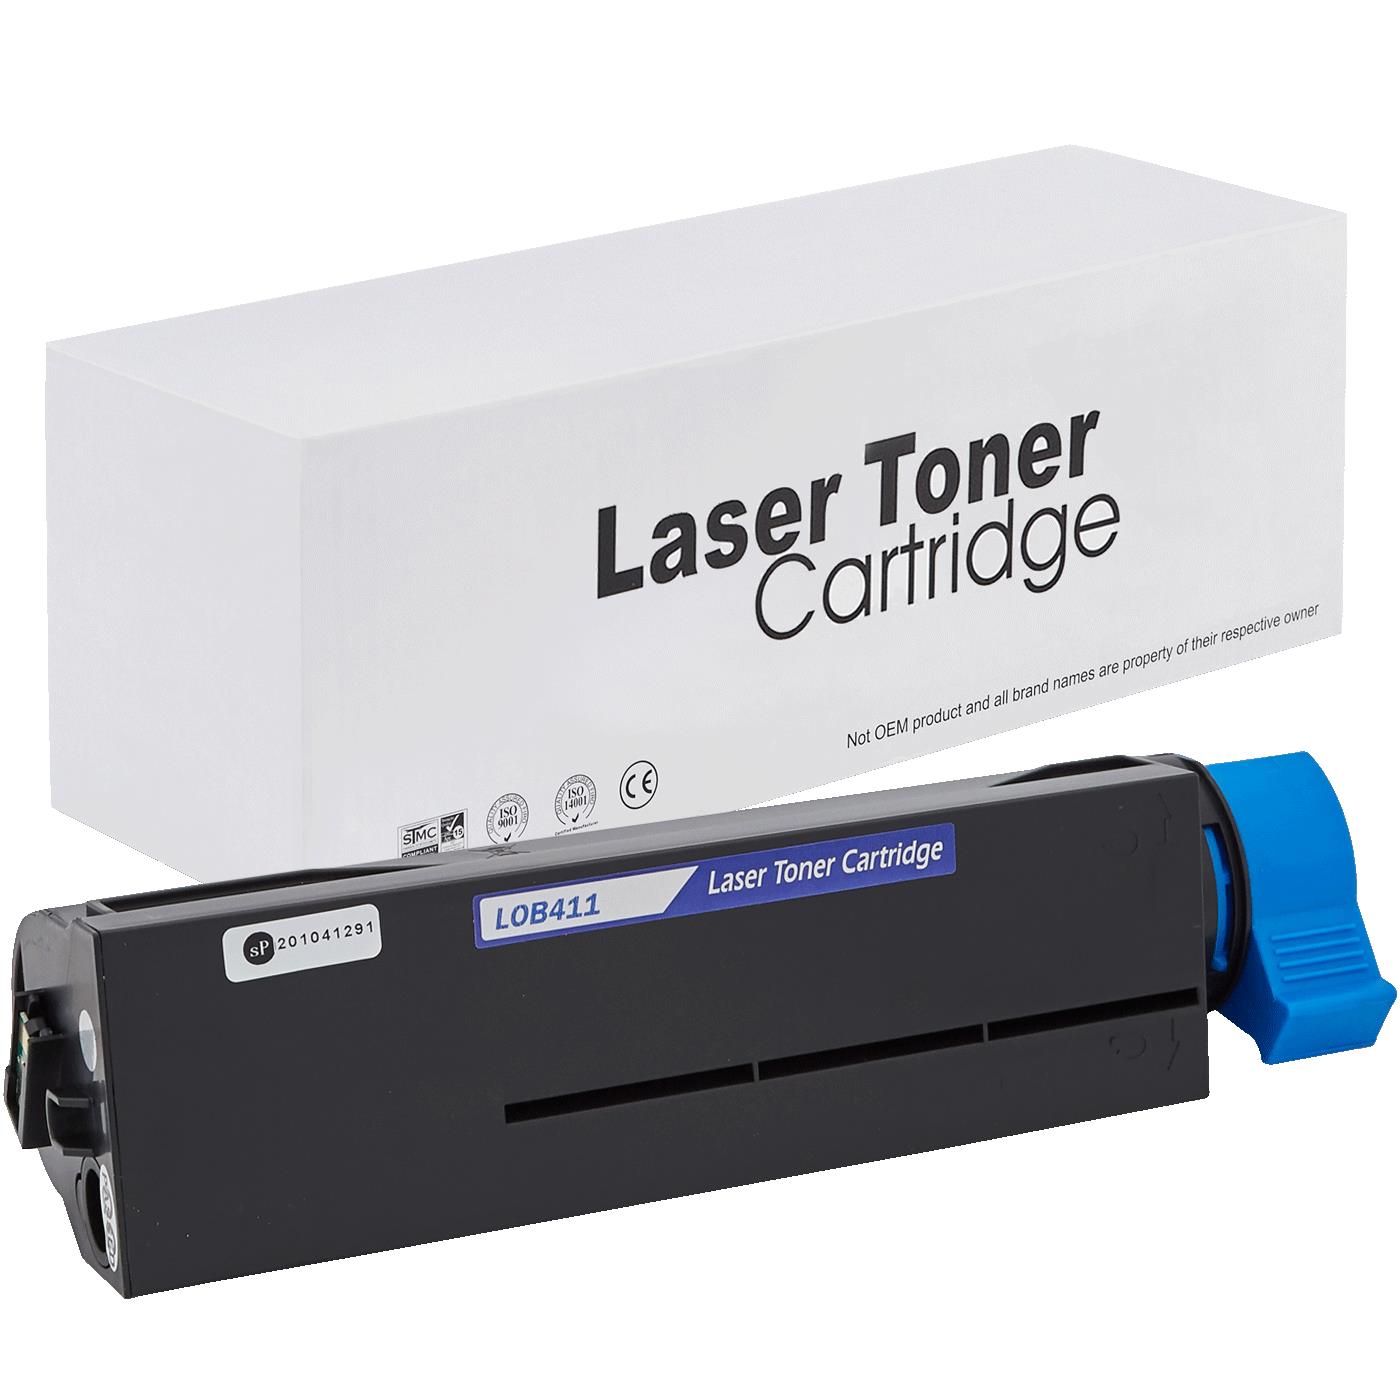 съвместима тонер касета за принтери и печатащи устройства на Oki 411DN Toner OK-411 | 44574702. Ниски цени, прецизно изпълнение, високо качество.